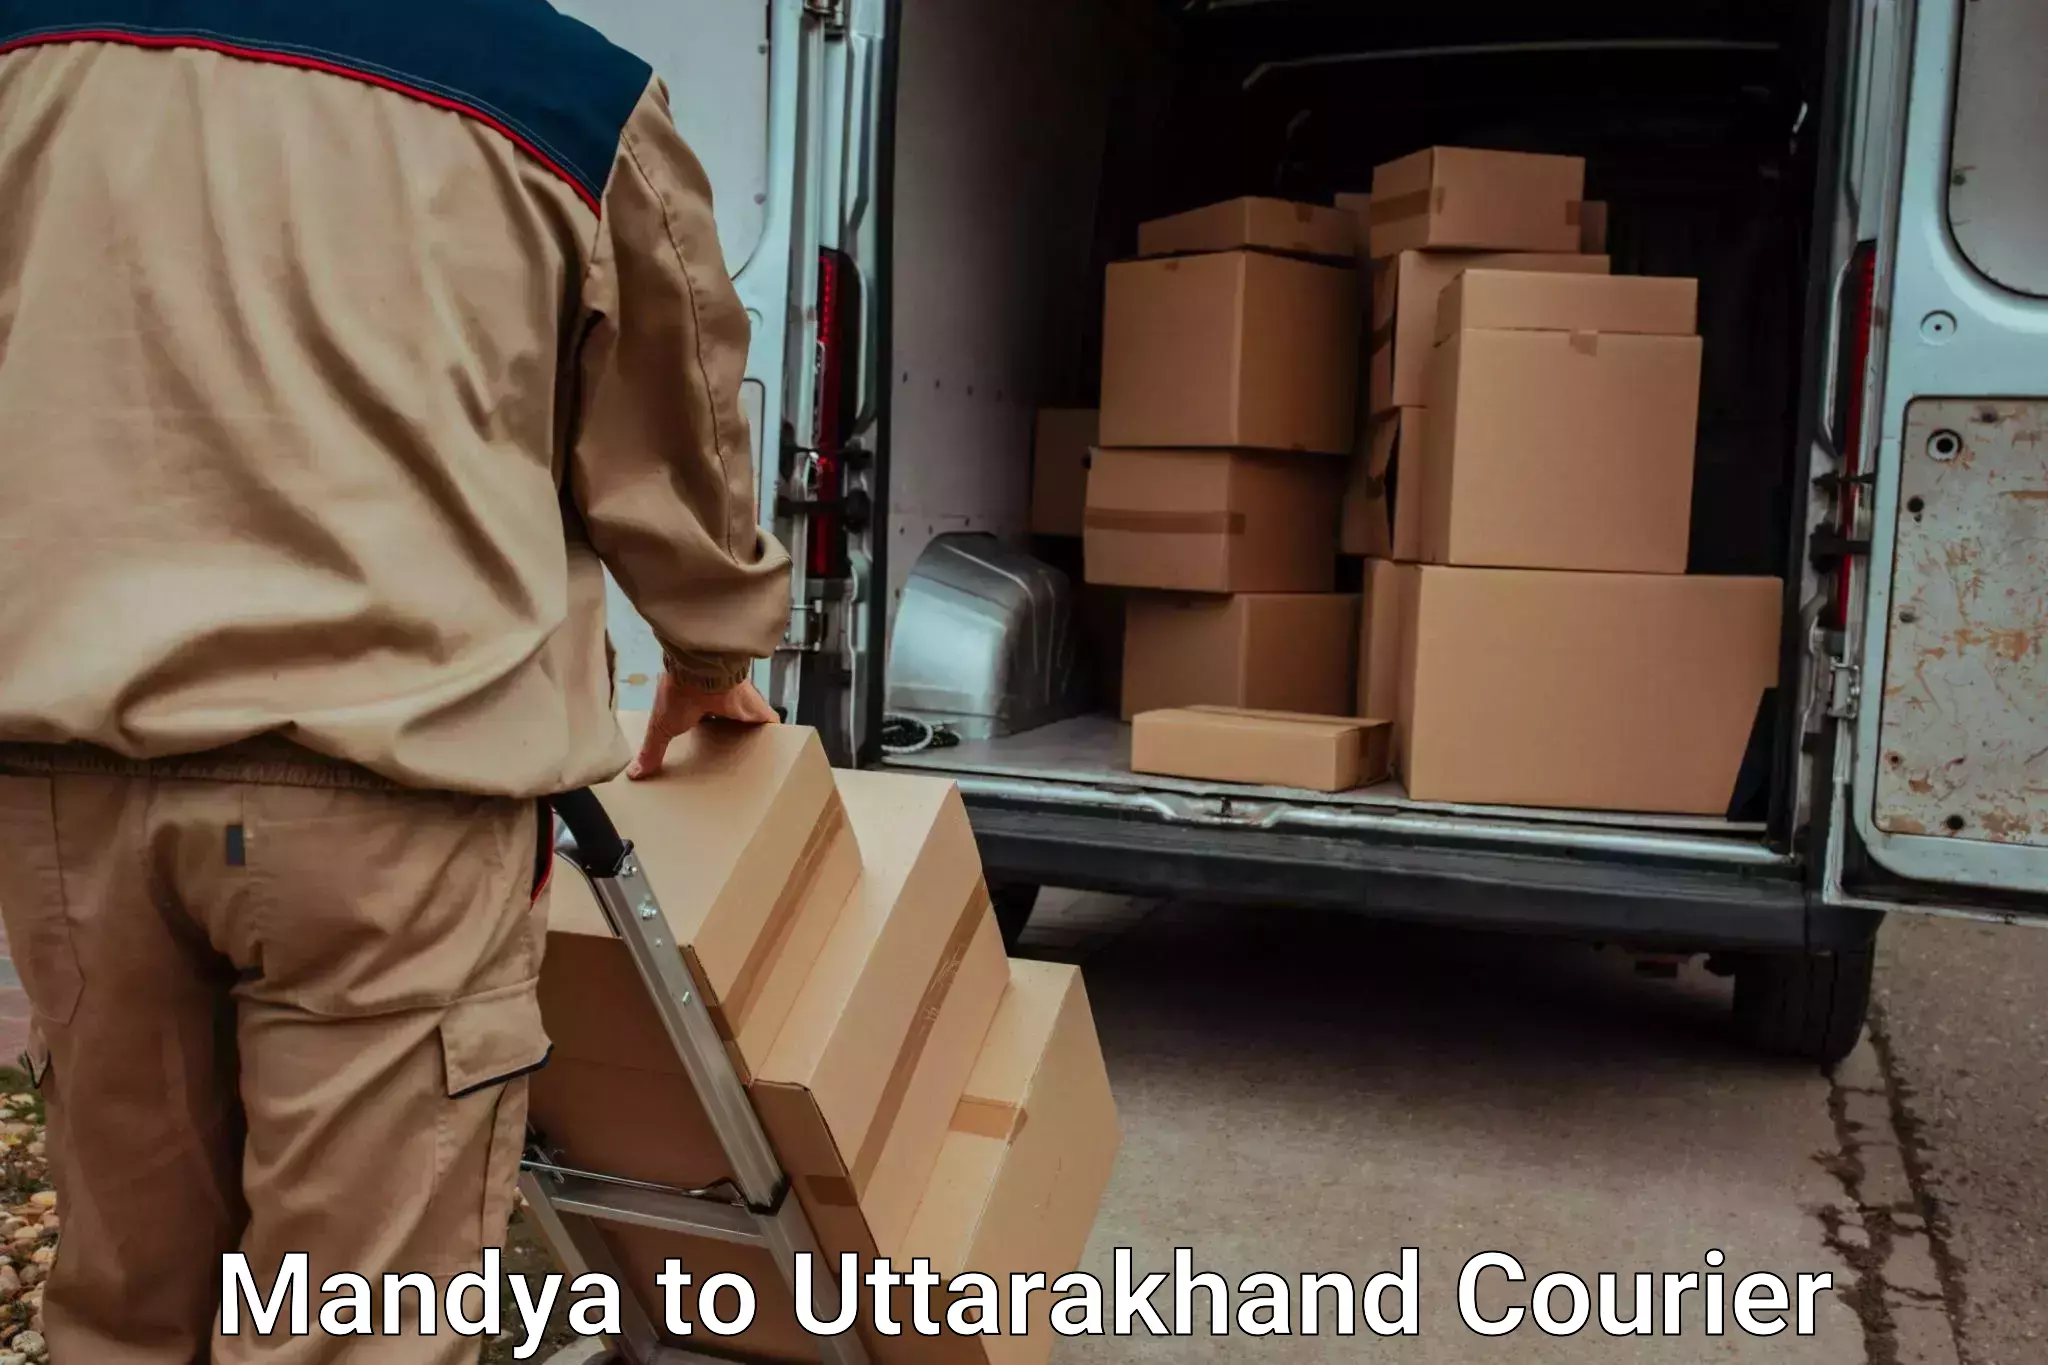 Urgent luggage shipment Mandya to Uttarakhand